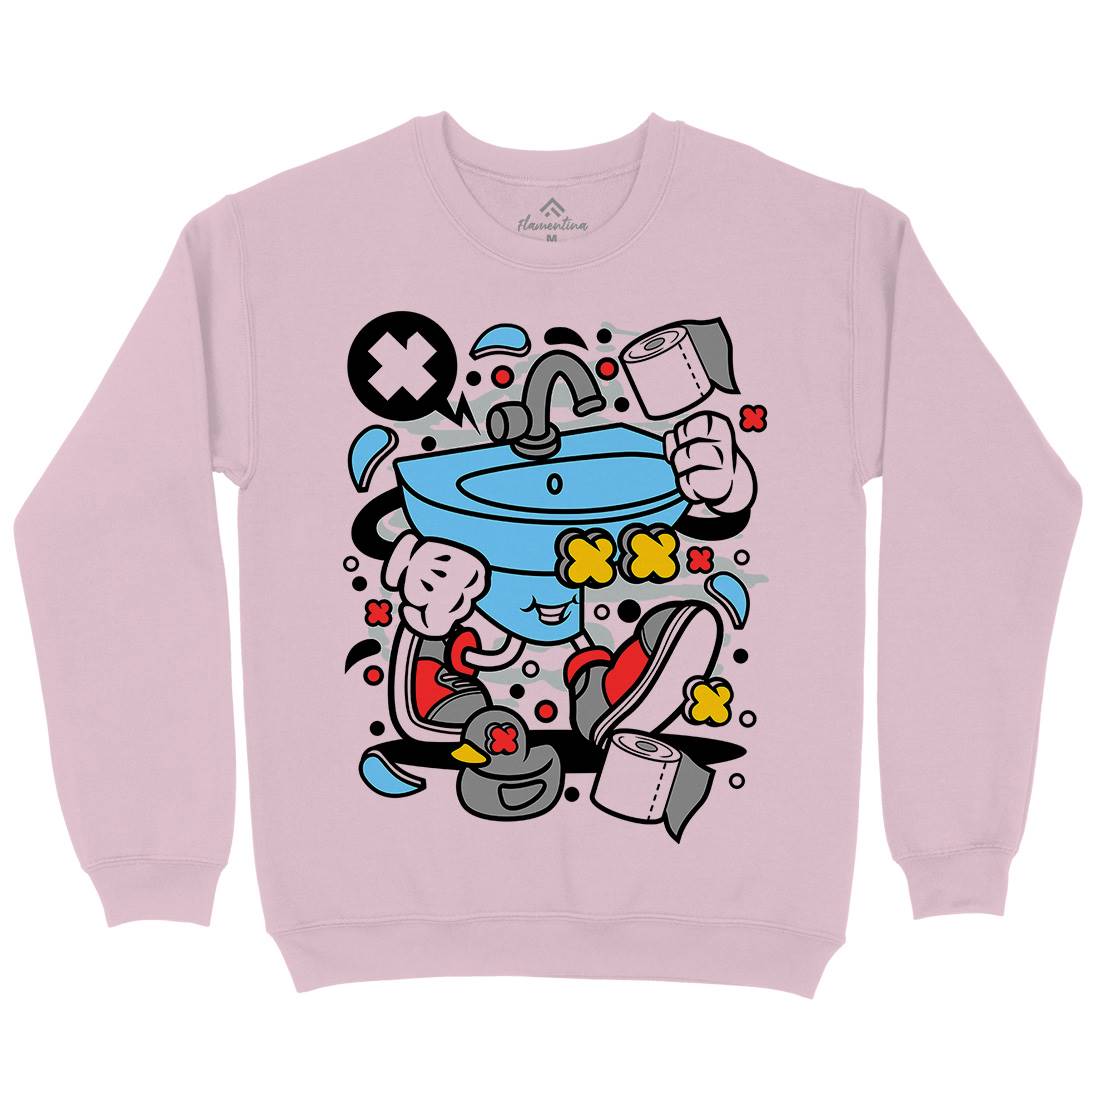 Sink Kids Crew Neck Sweatshirt Retro C652